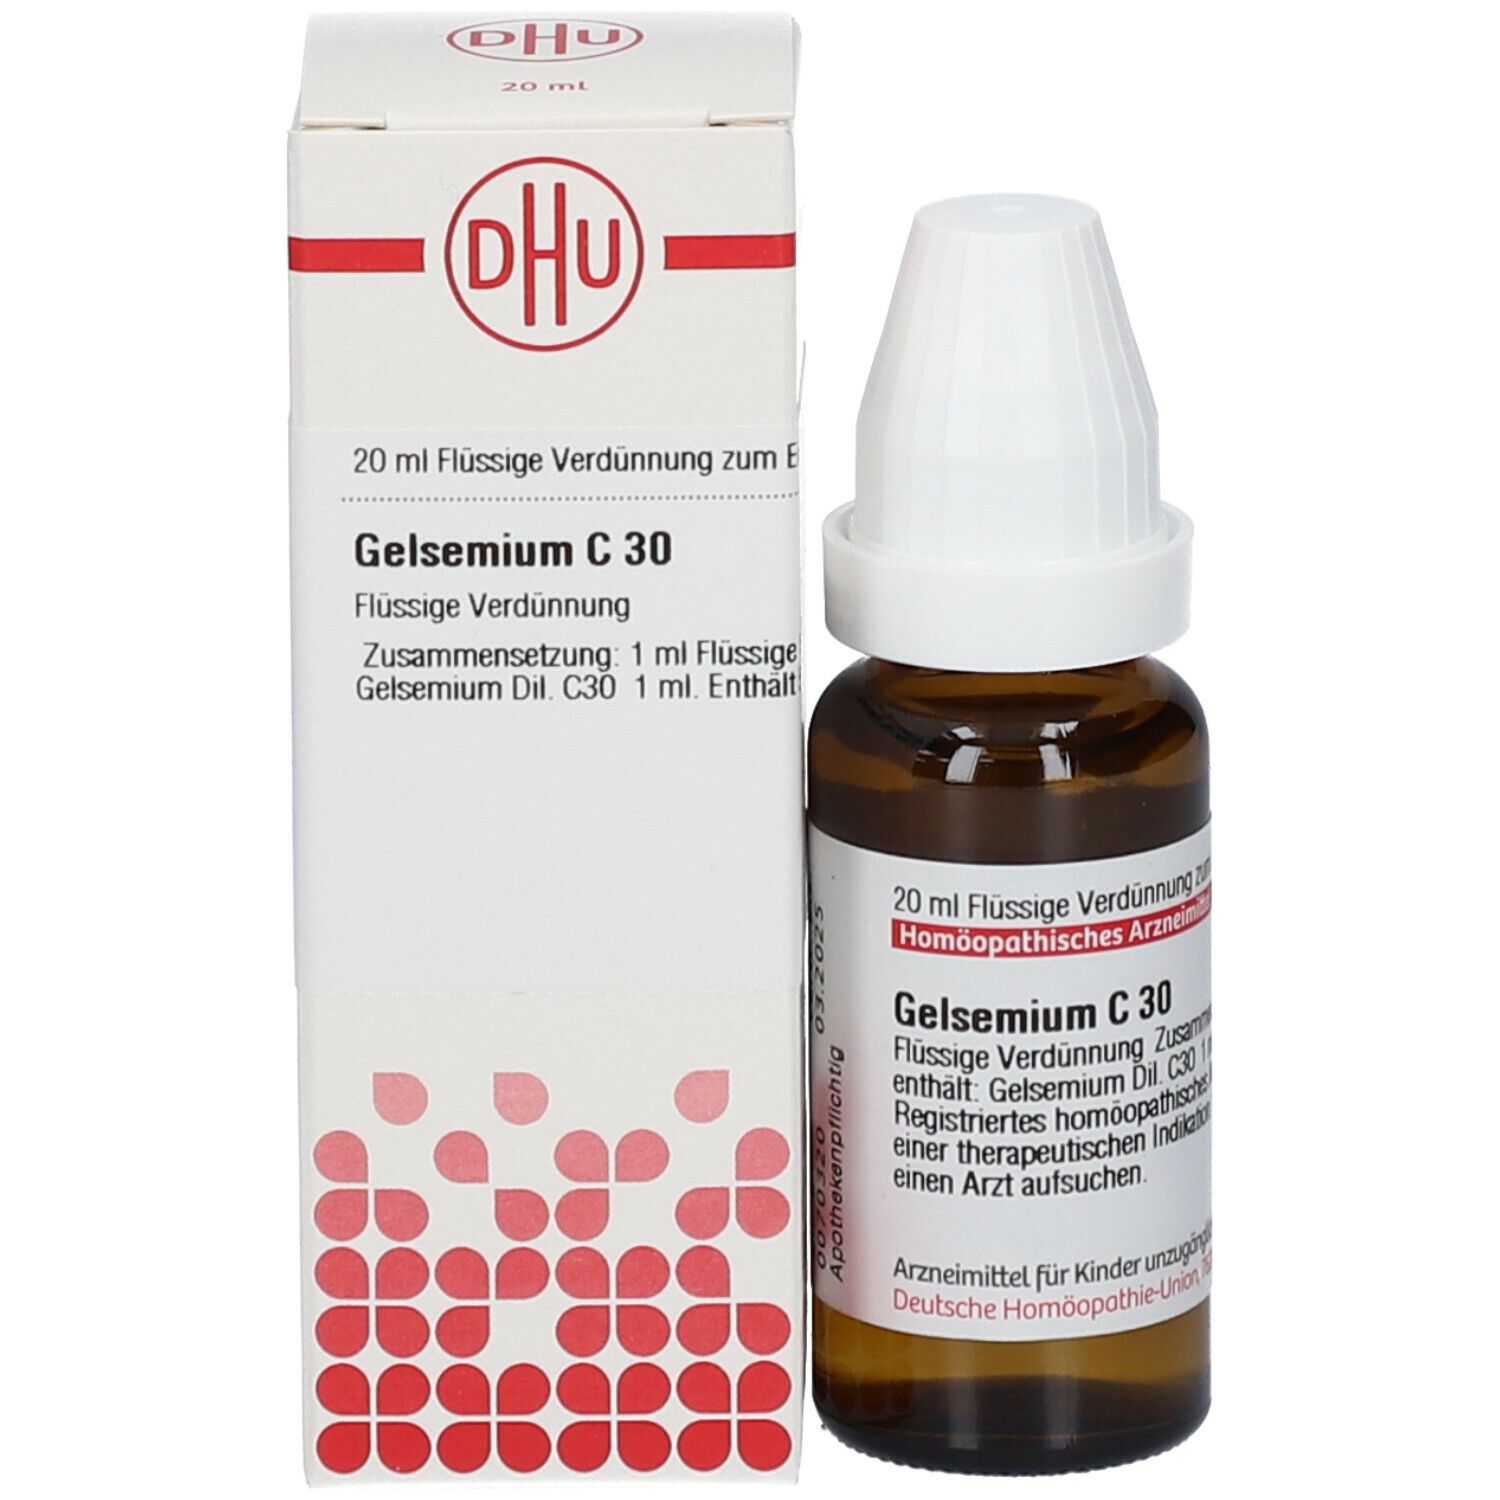 DHU Gelsemium C30